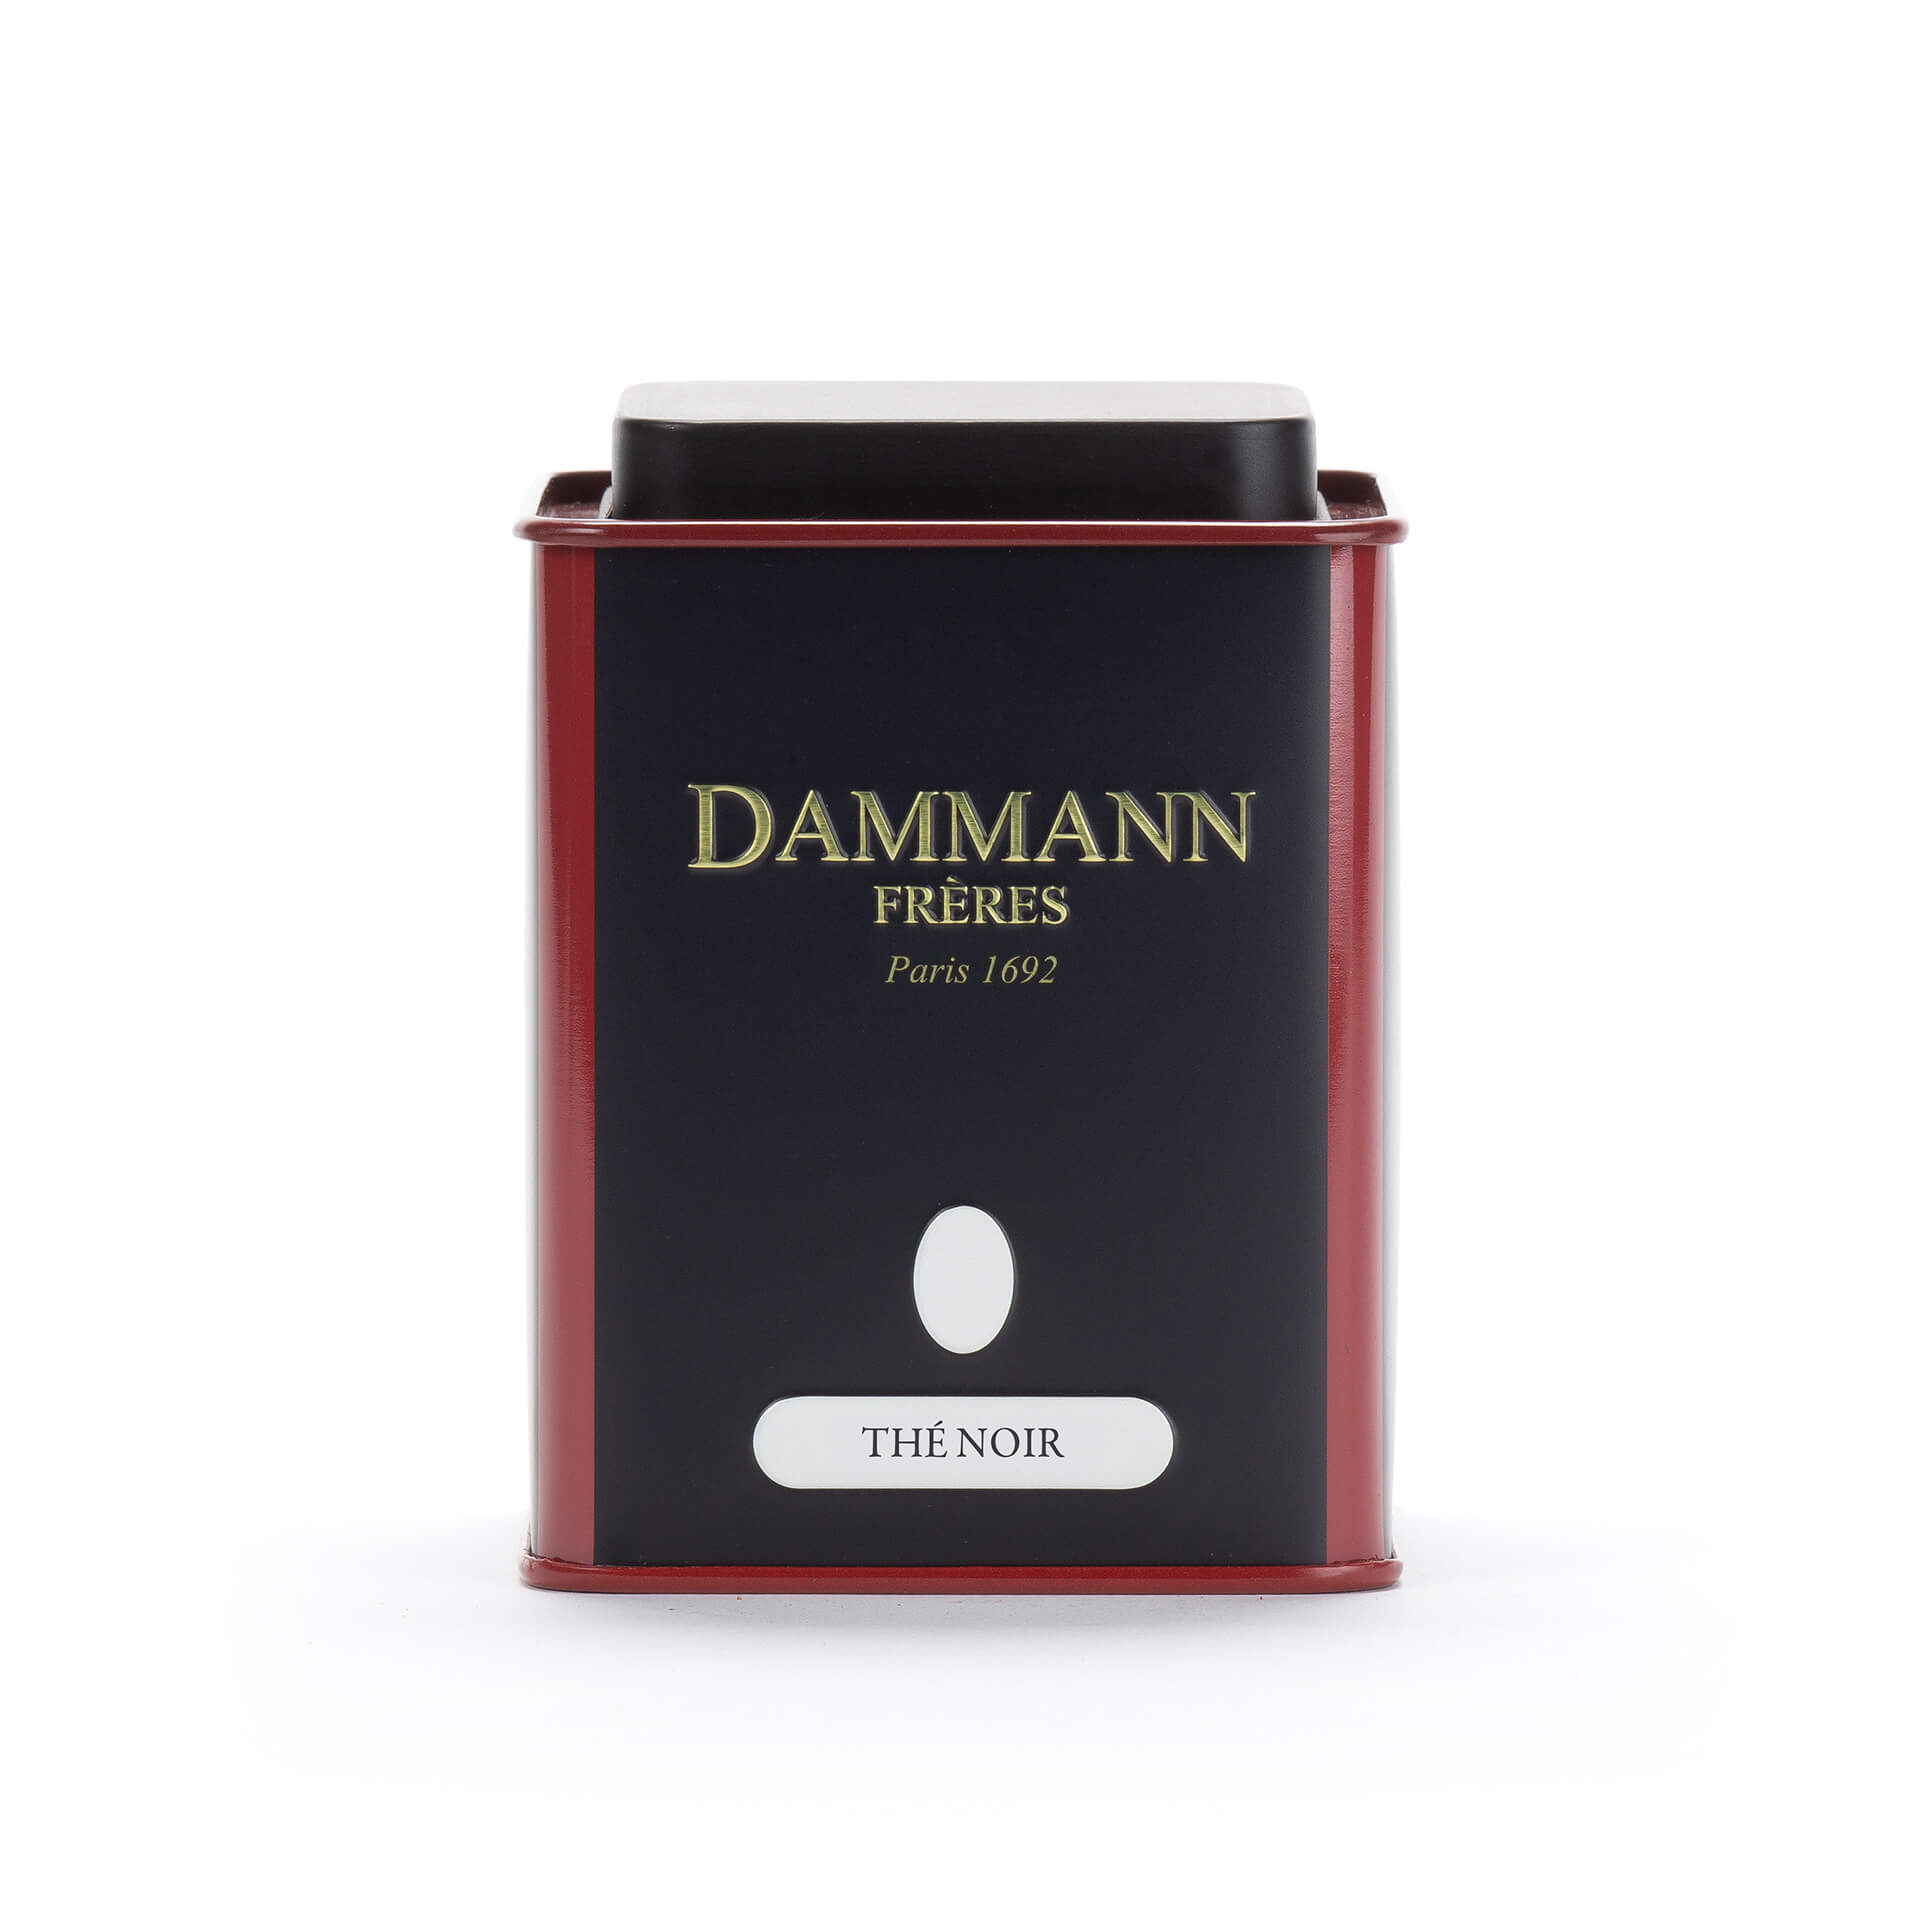 Μεταλλικό δοχείο Dammann αποθήκευσης μαύρου τσαγιού 100g , Αποθήκευση / Δοχεία, 18-20-1806